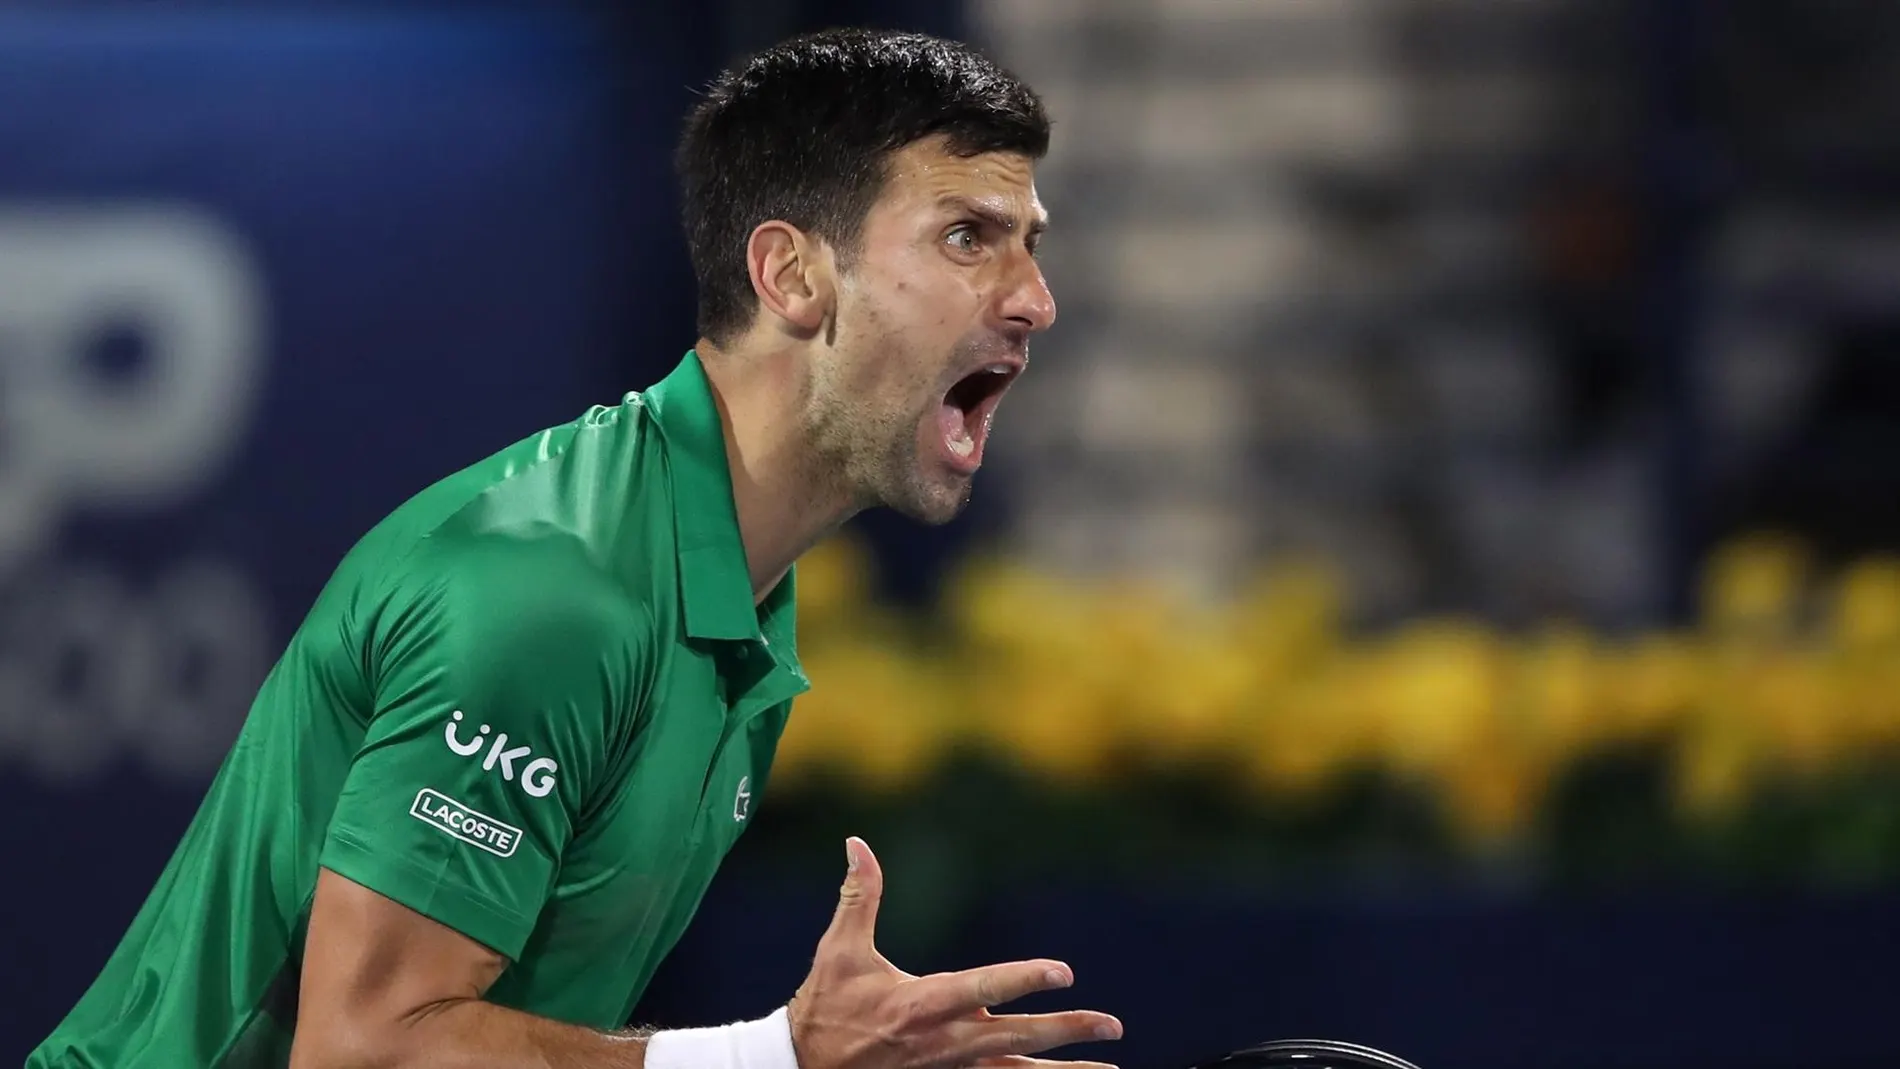 Djokovic, en Dubai